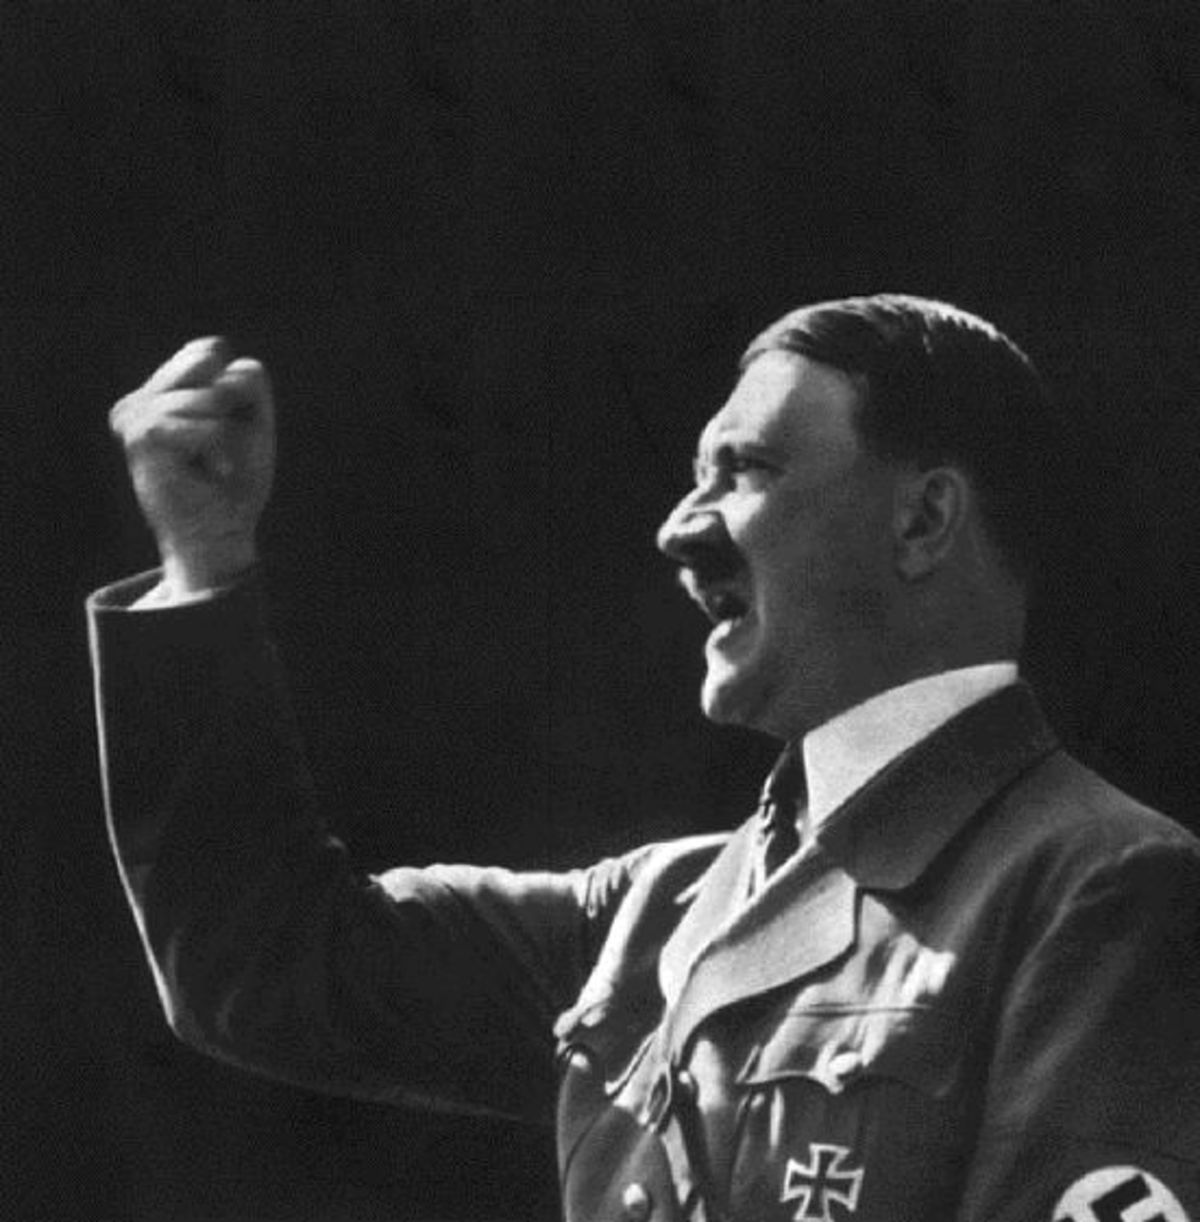 Οι Γερμανοί εκδίδουν για πρώτη φορά μετά το πόλεμο τον “Αγών μου” του Χίτλερ!